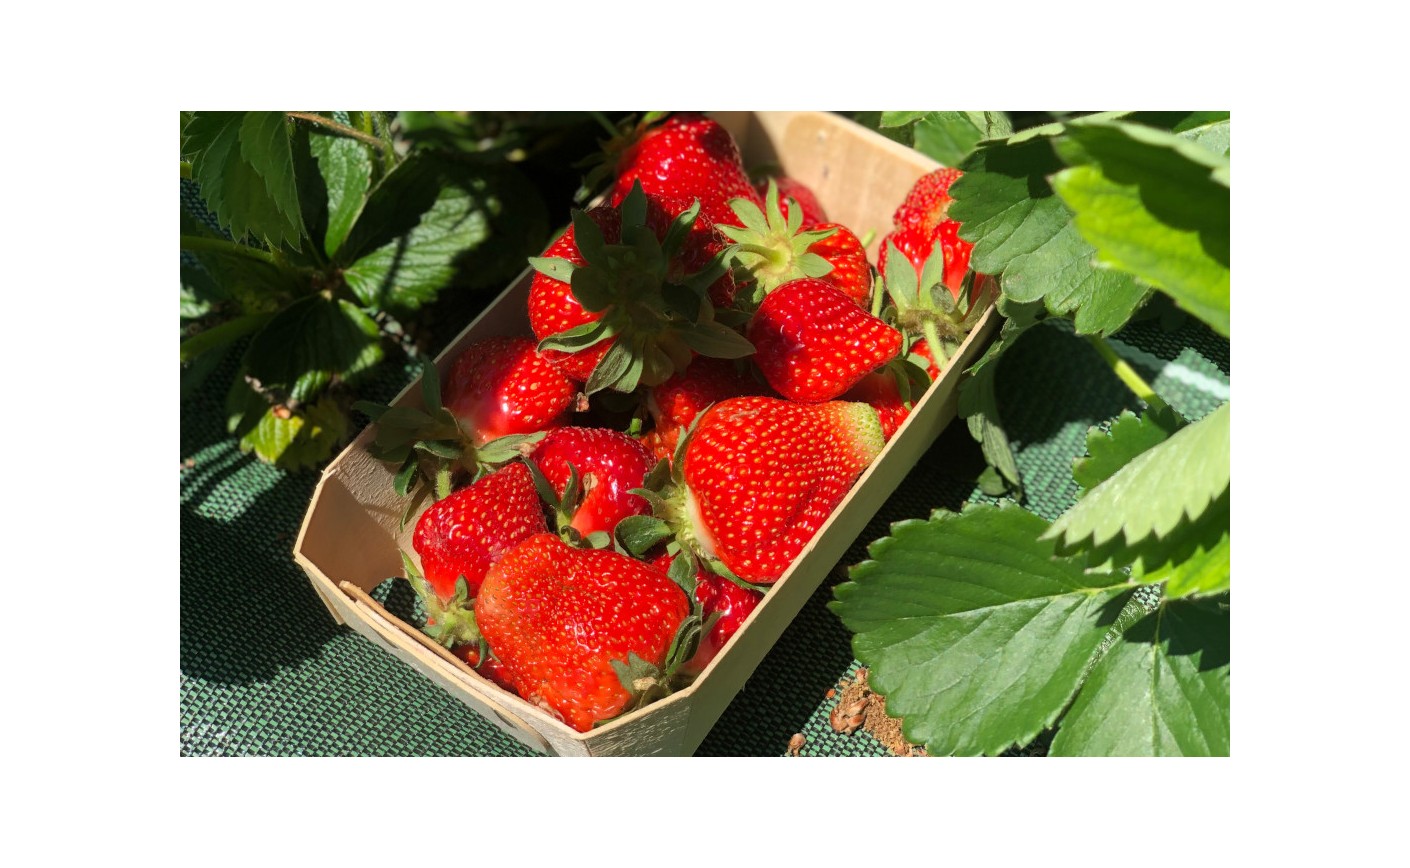 Les fraises arrivent et seront disponibles en vente additionnelle